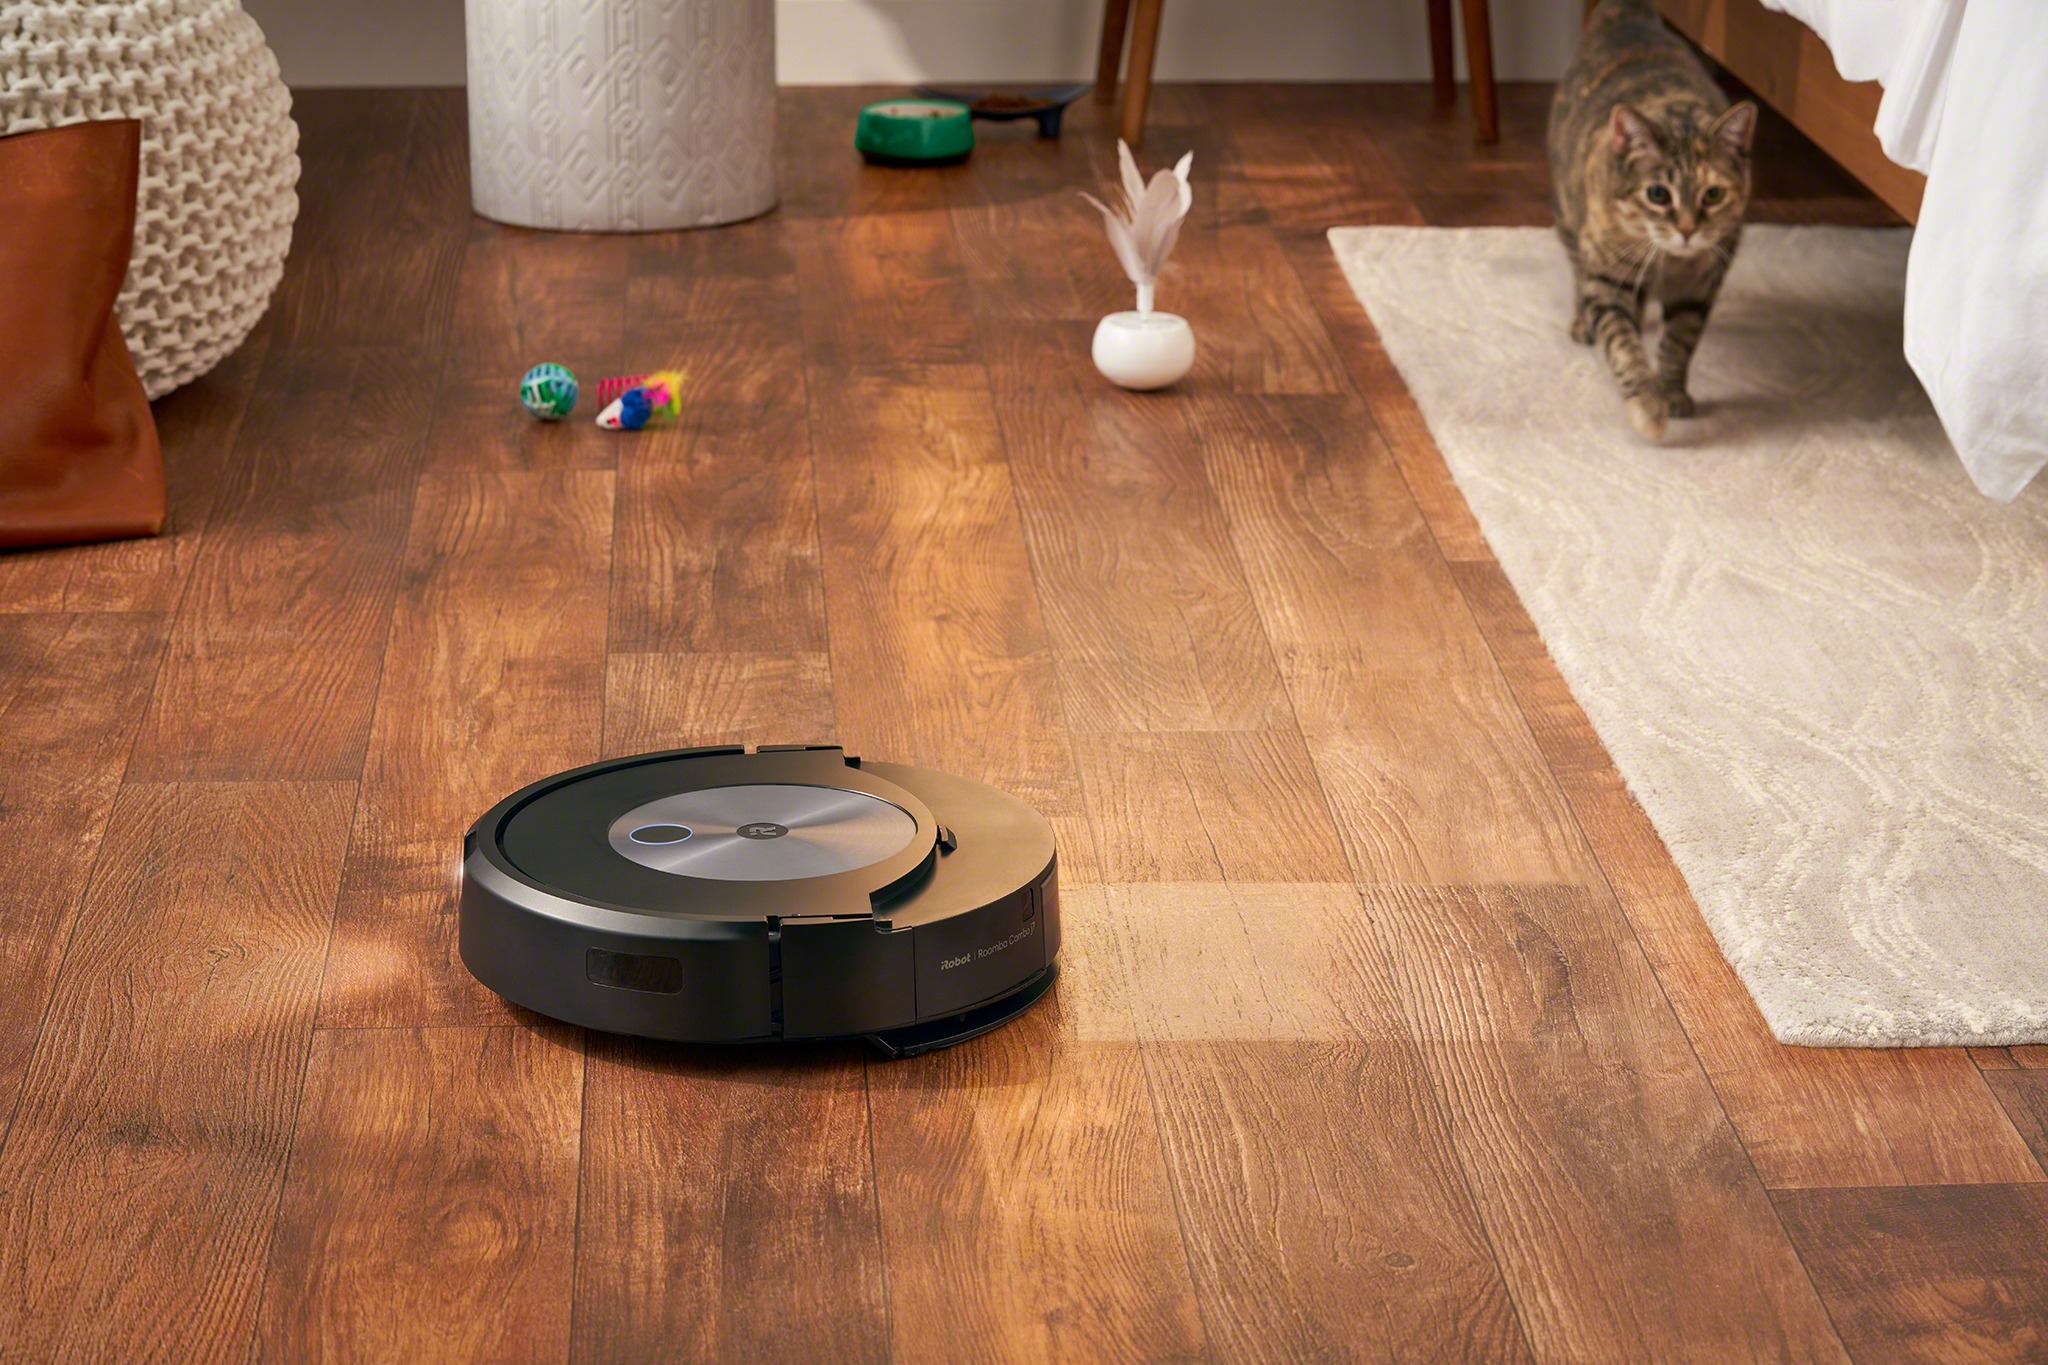 El Roomba Combo j7+ fregando suelos de madera.